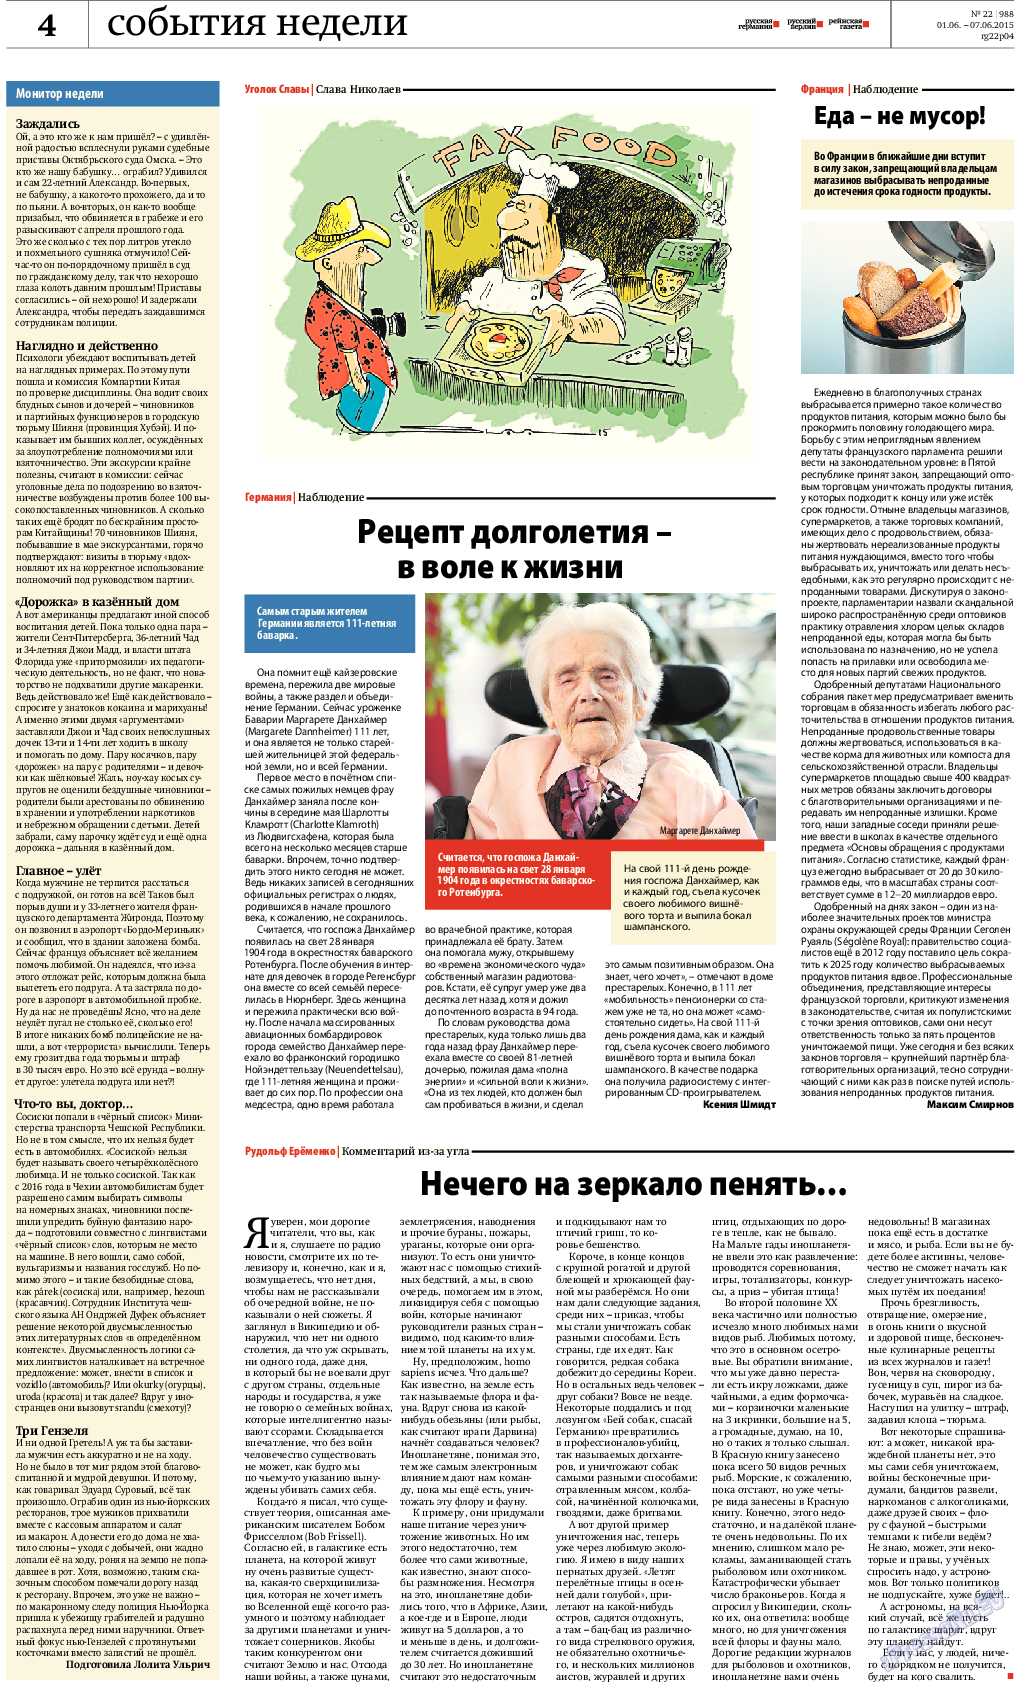 Рейнская газета, газета. 2015 №22 стр.4